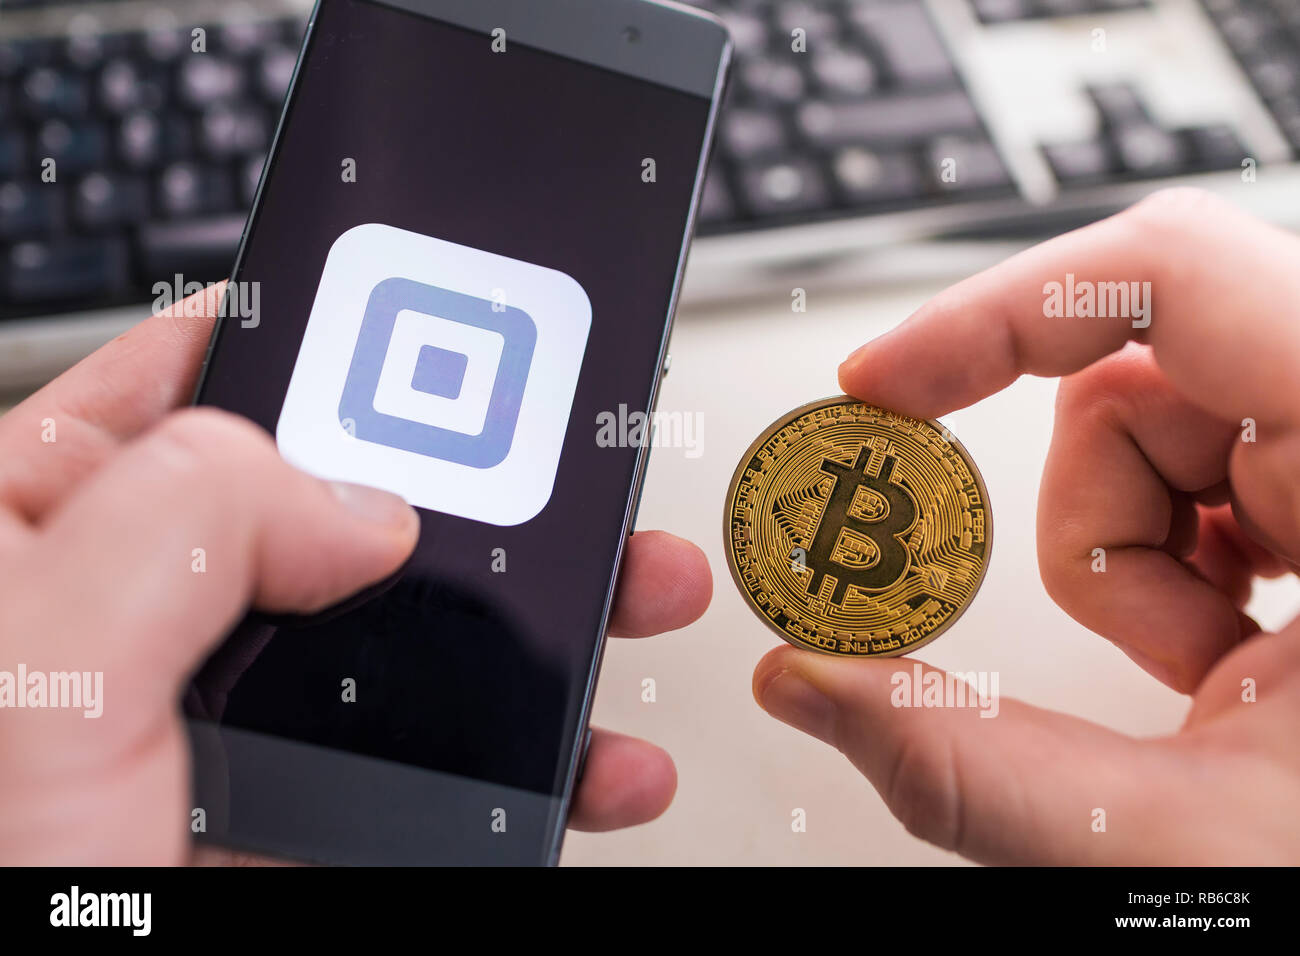 SLOVENIA - Gennaio 8, 2019: uomo azienda Bitcoin monete e in altri smartphone a mano con applicazione di quadri. Foto Stock